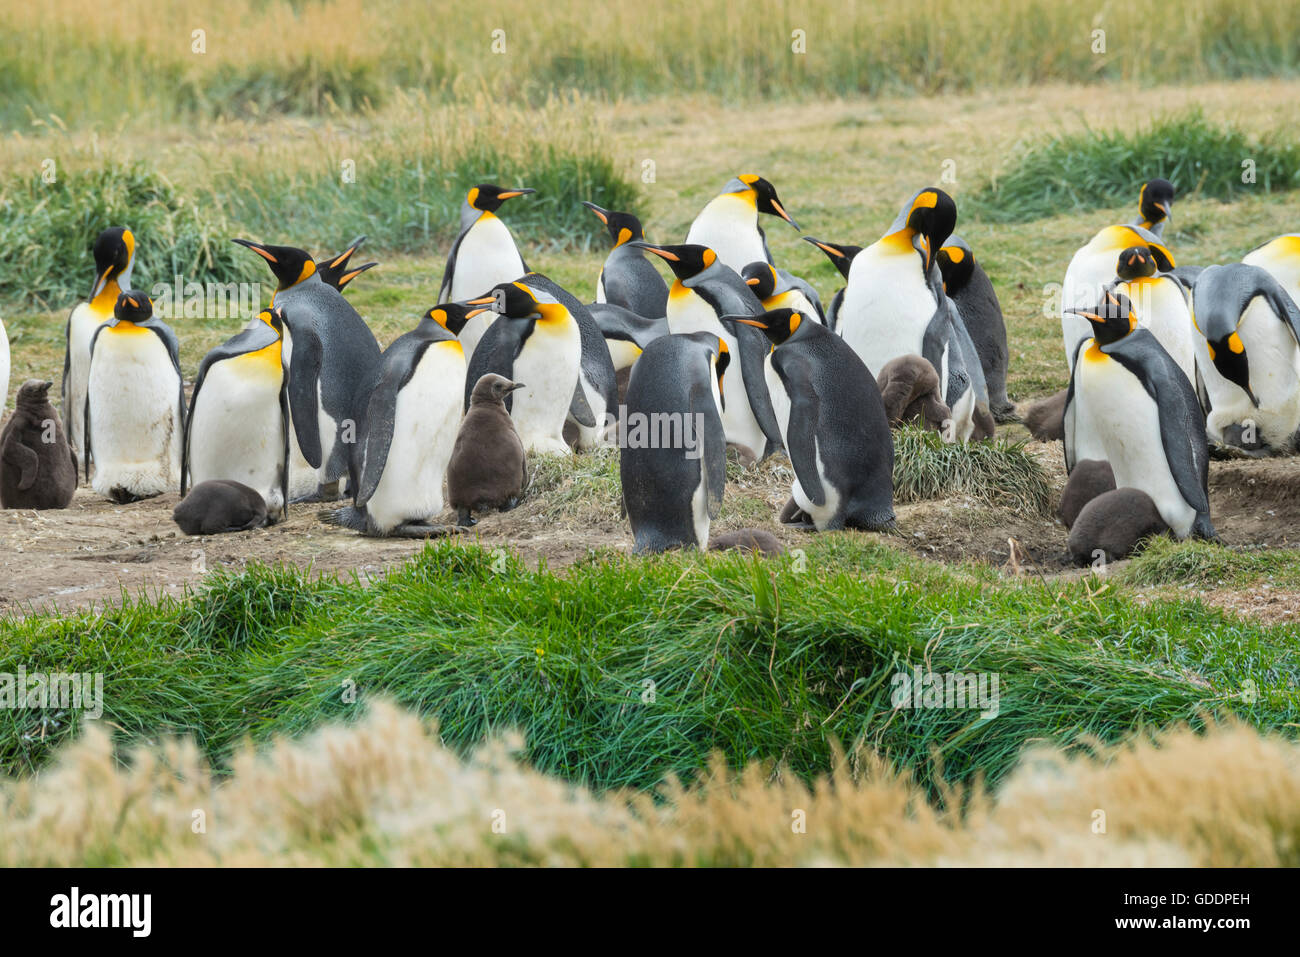 South America,Chile,Tierra del Fuego,Penguin colony Stock Photo